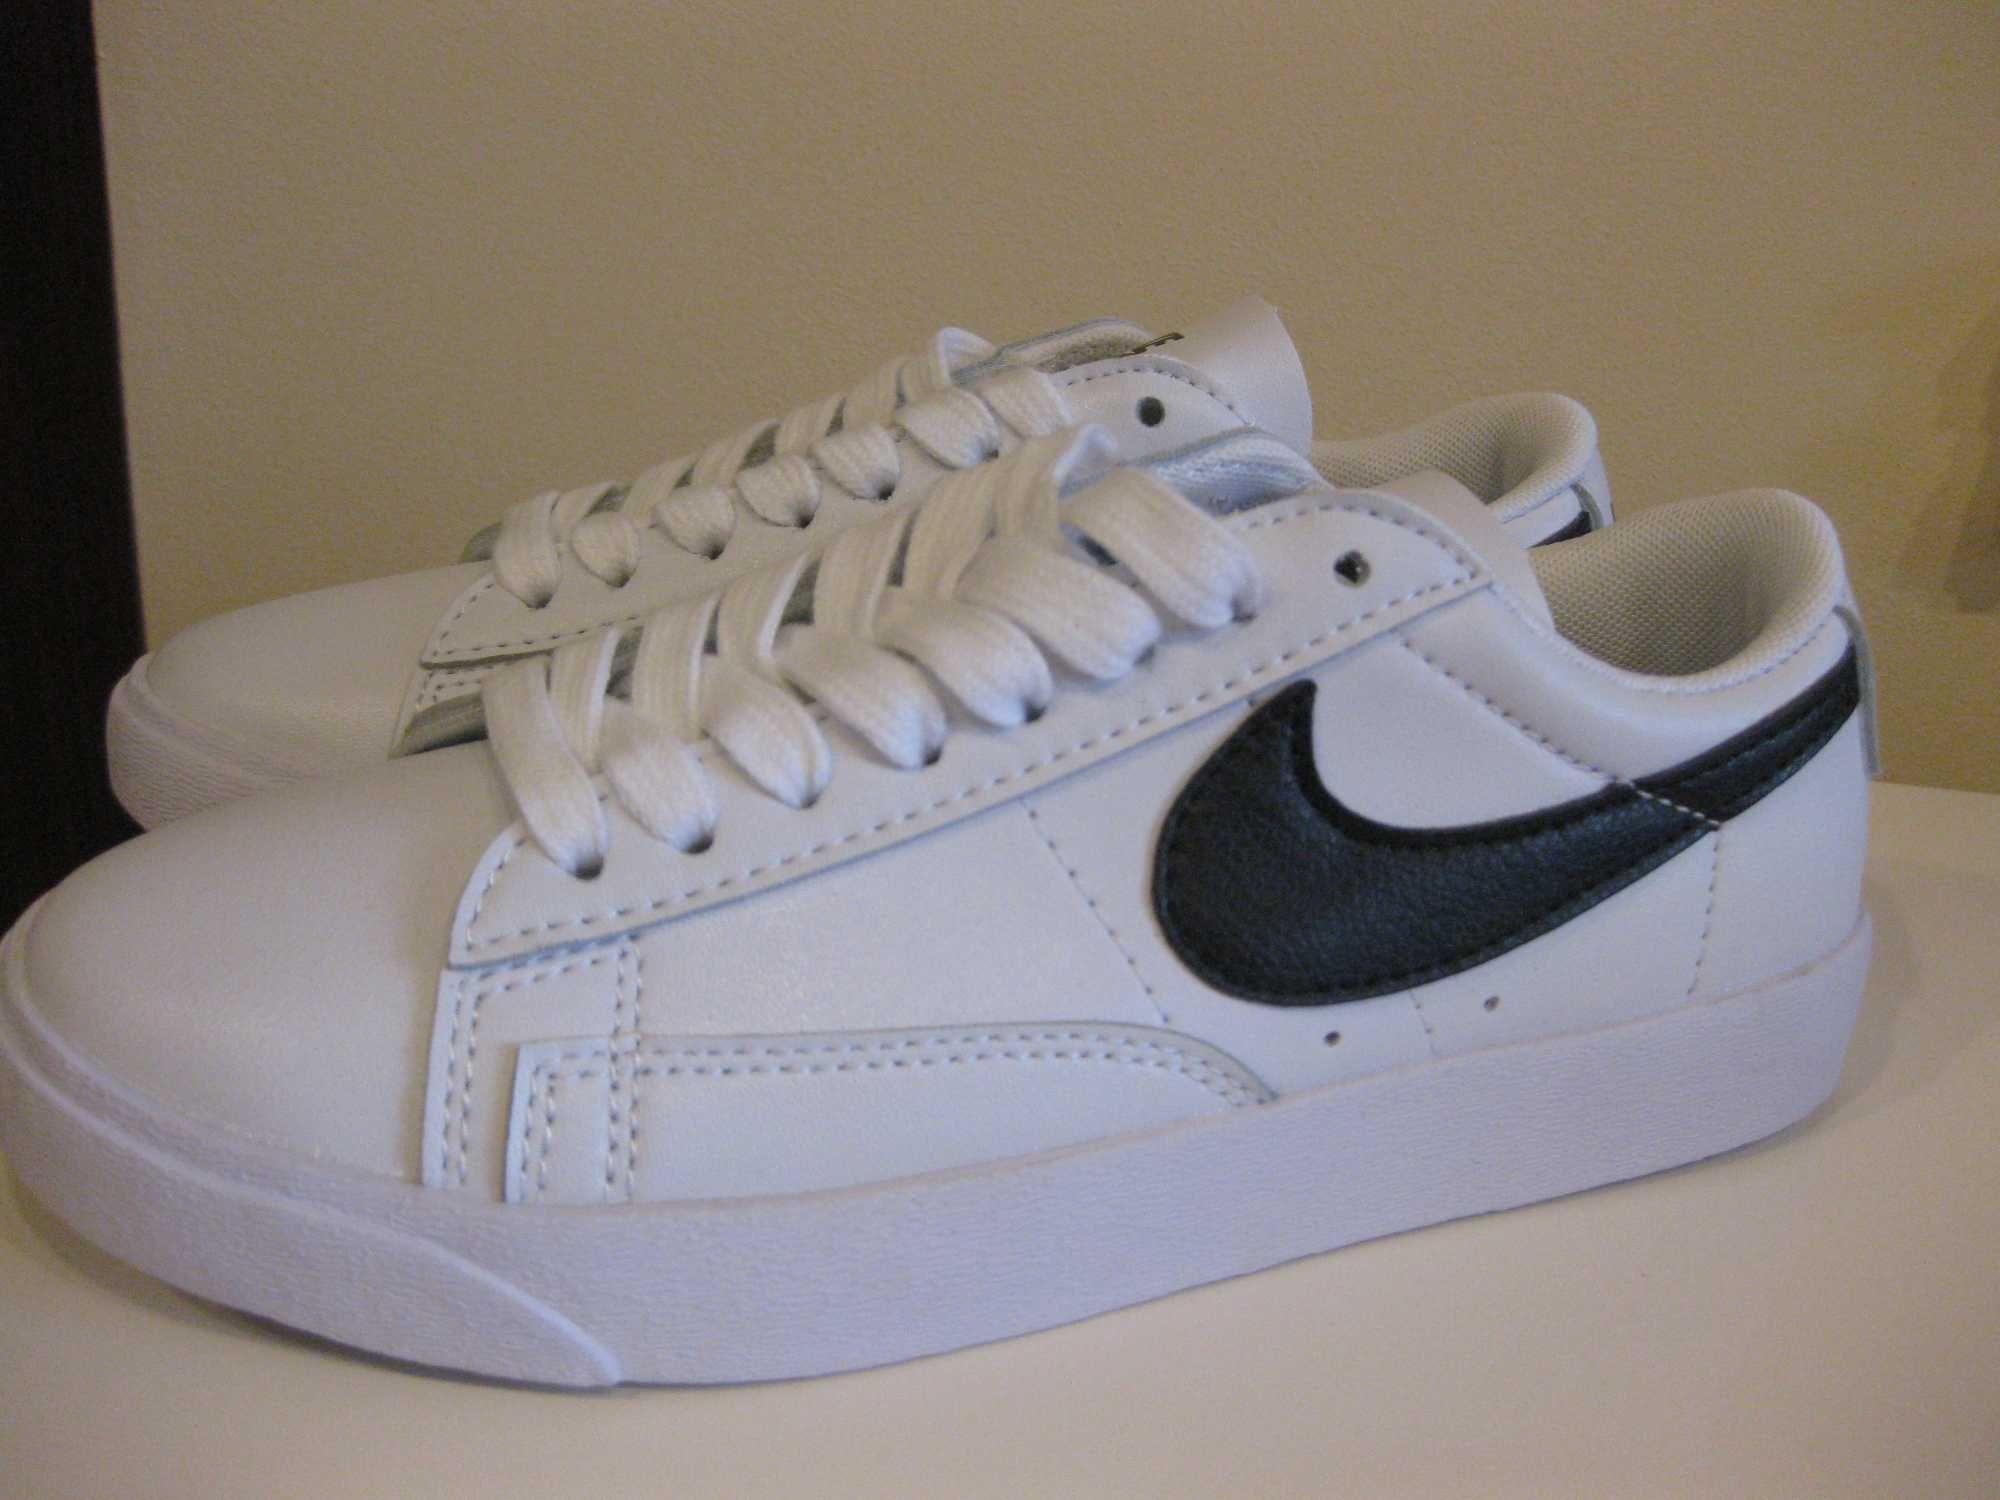 Nike Tennis Classic buty rozm.36,5 (dł.wkł.22,5cm)